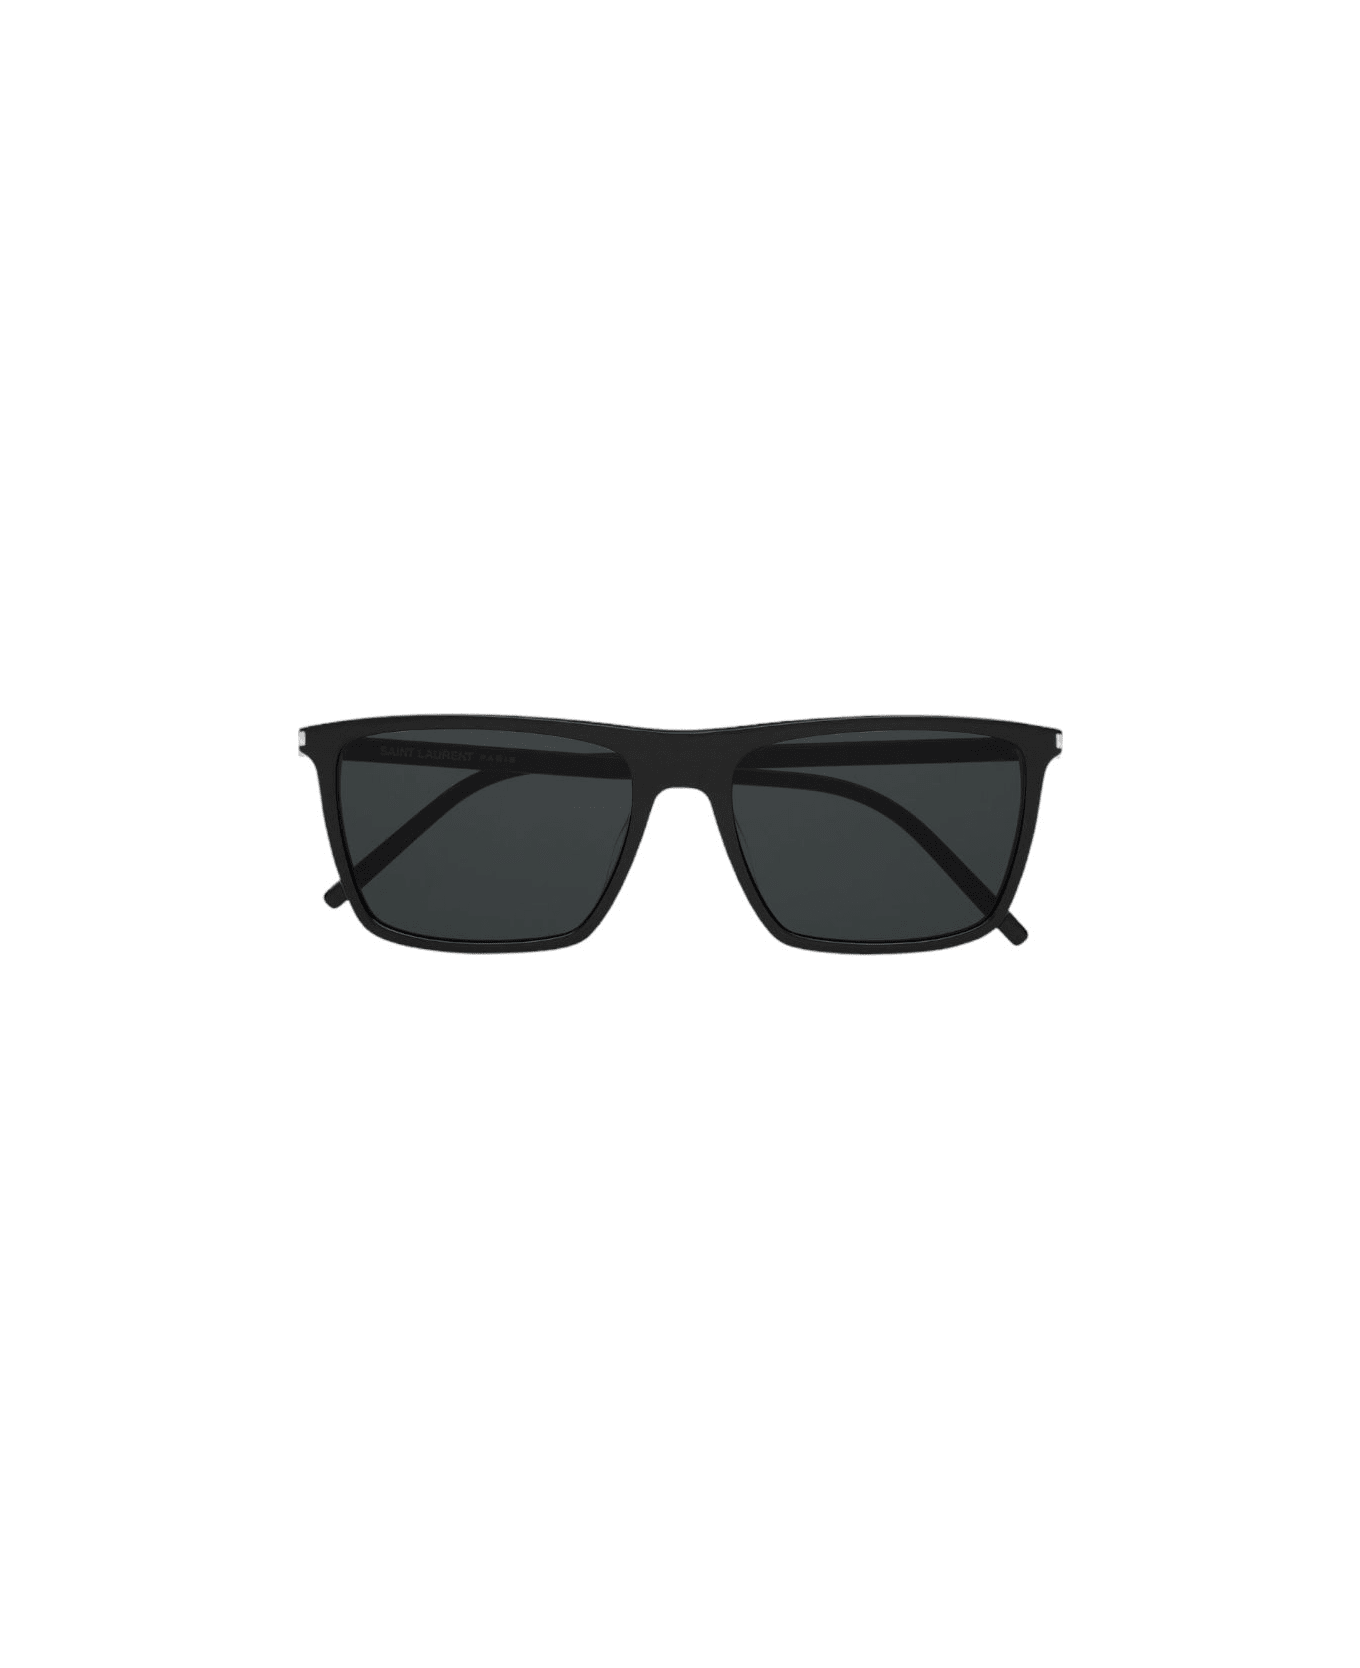 Saint Laurent Eyewear Sl 668 - Black Sunglasses